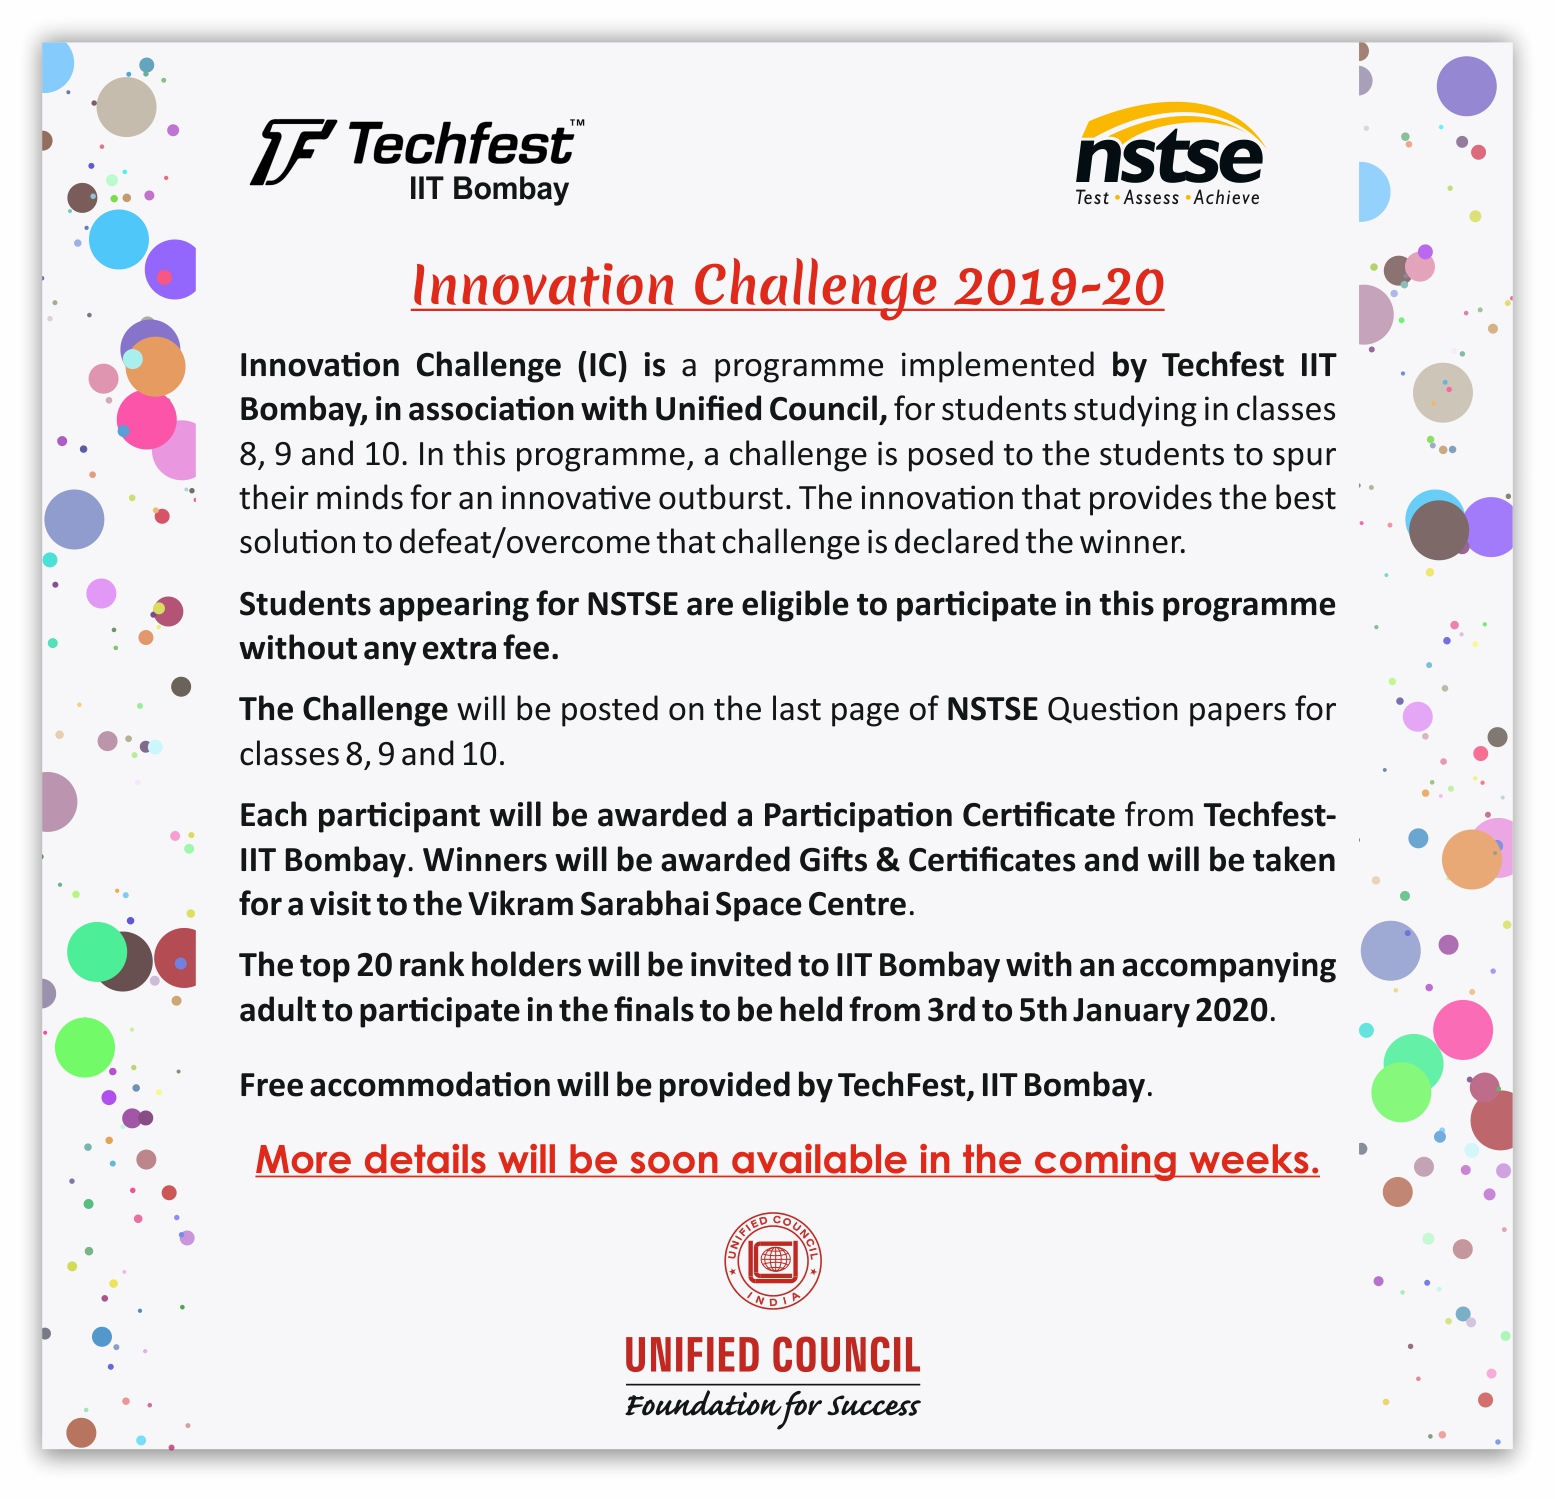 TechFest_IIT Bombay Innovation Challenge